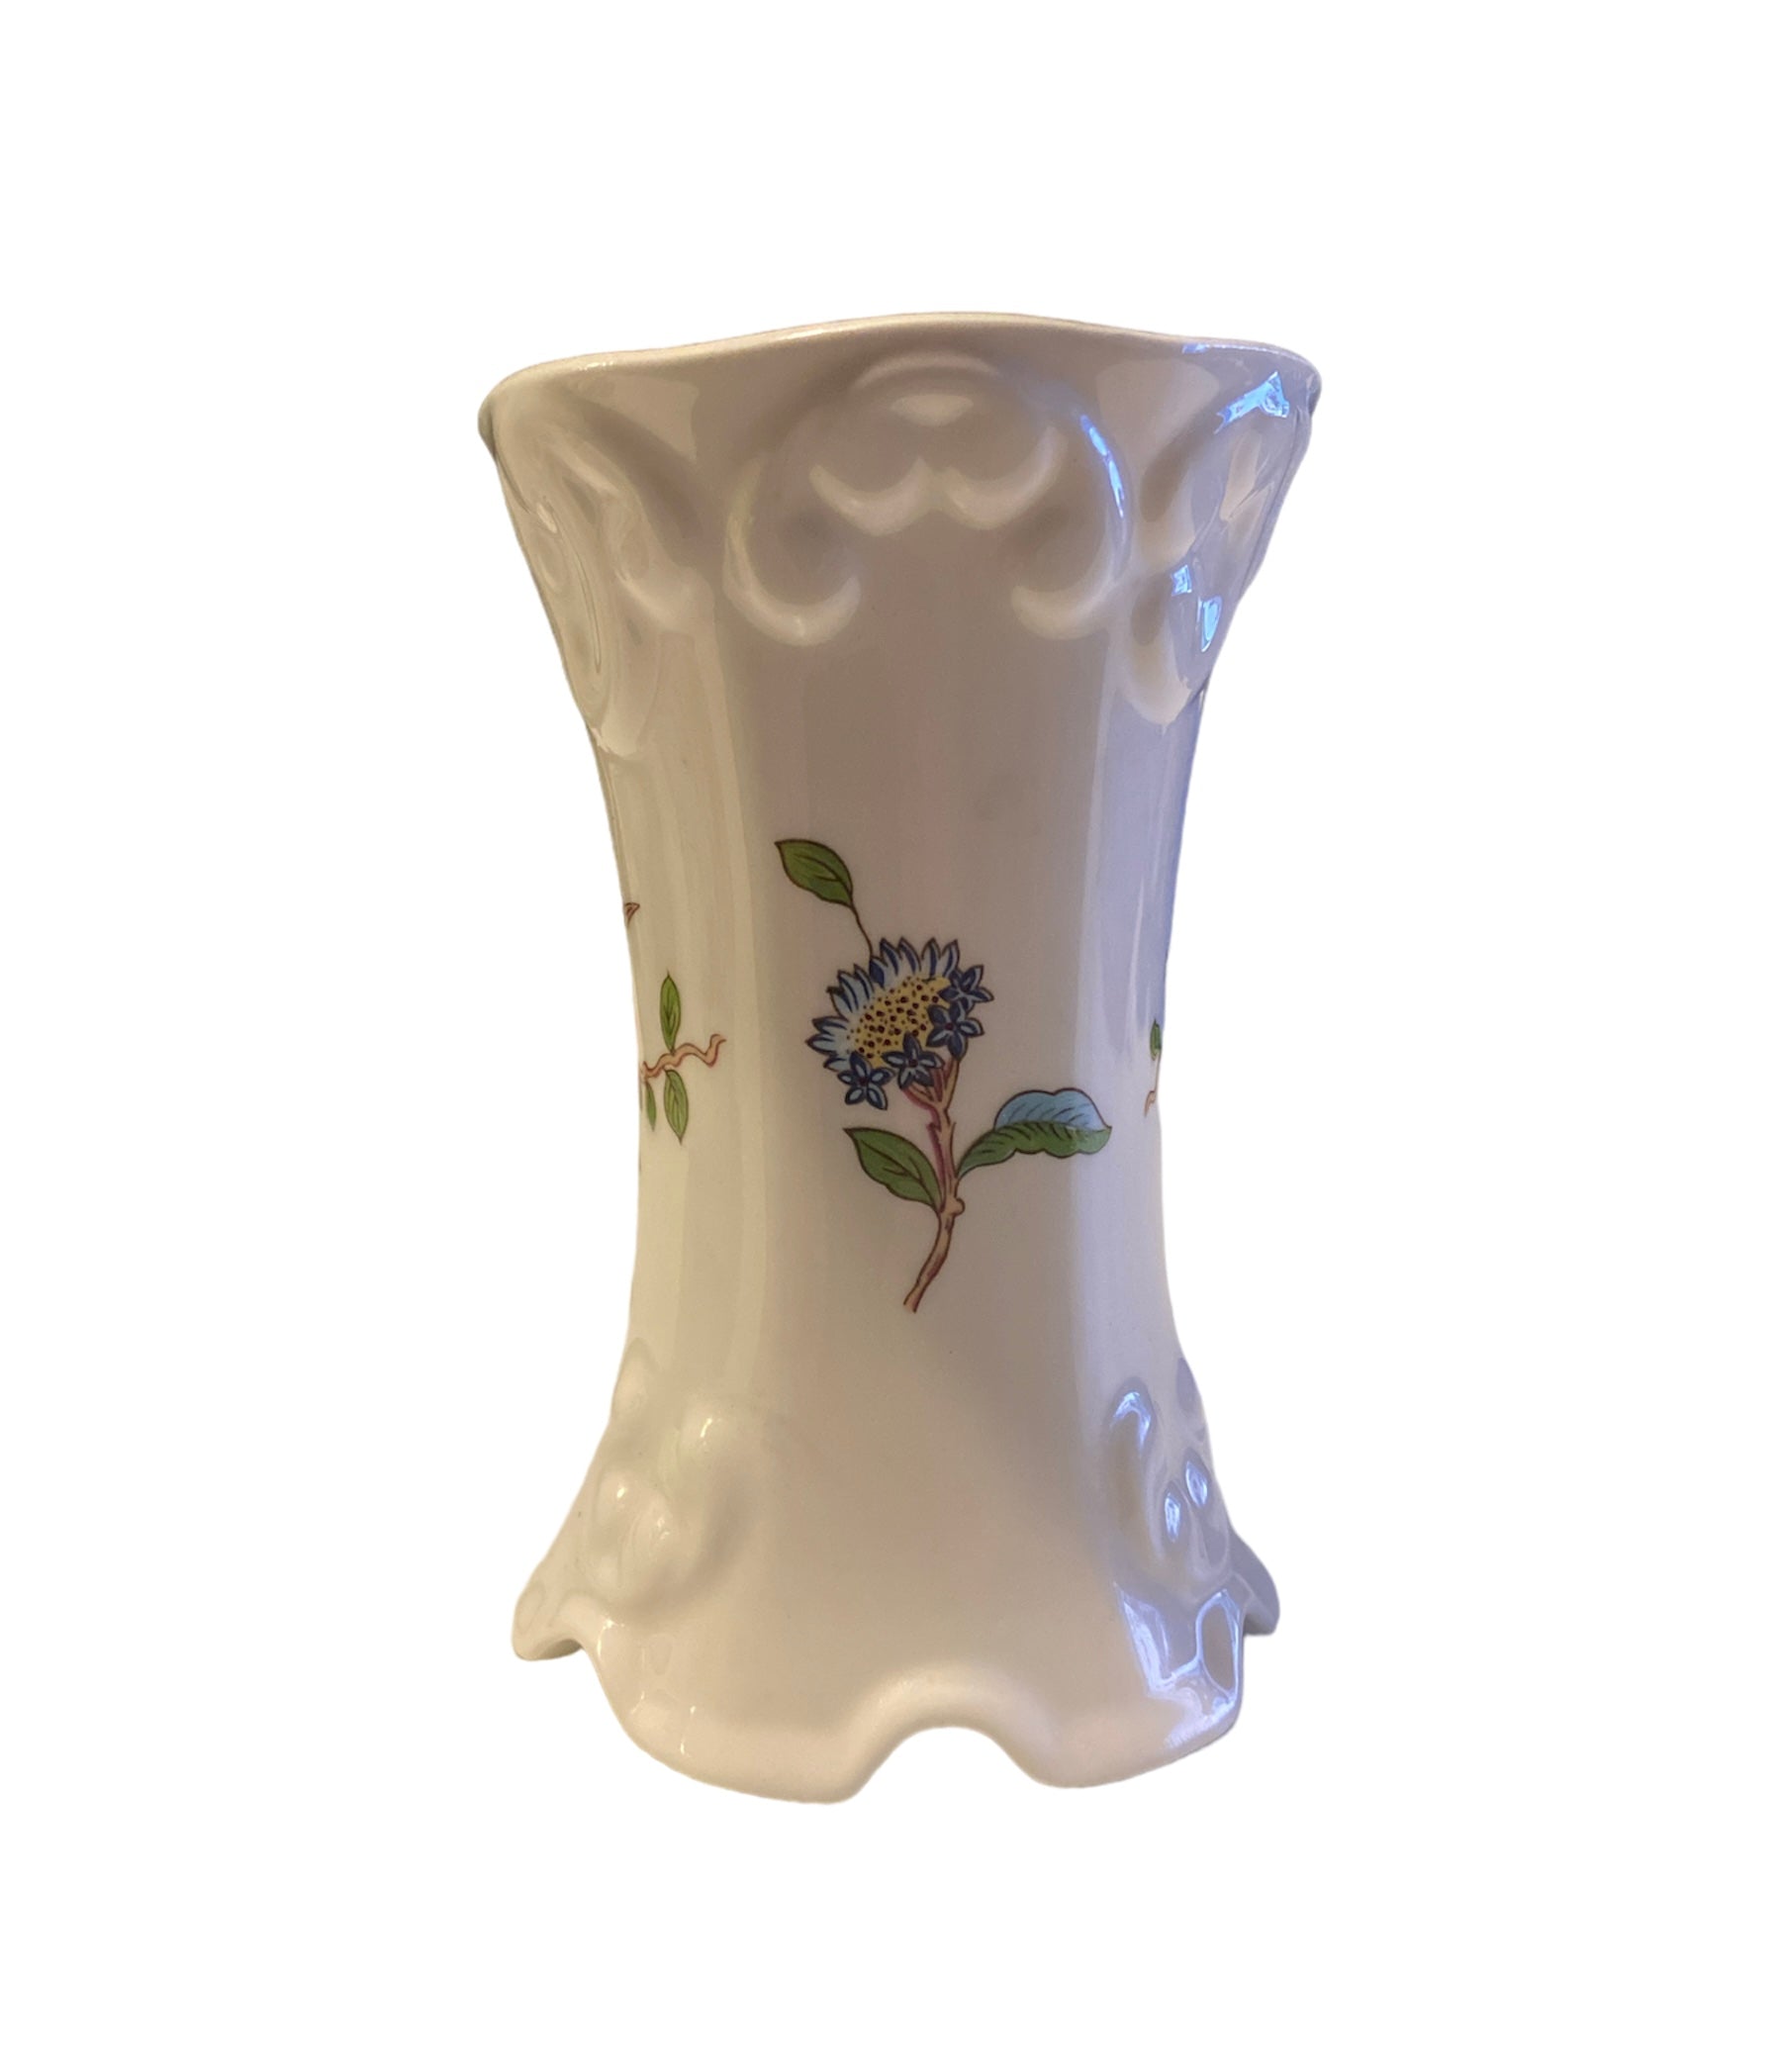 Aynsley Pembroke Vase